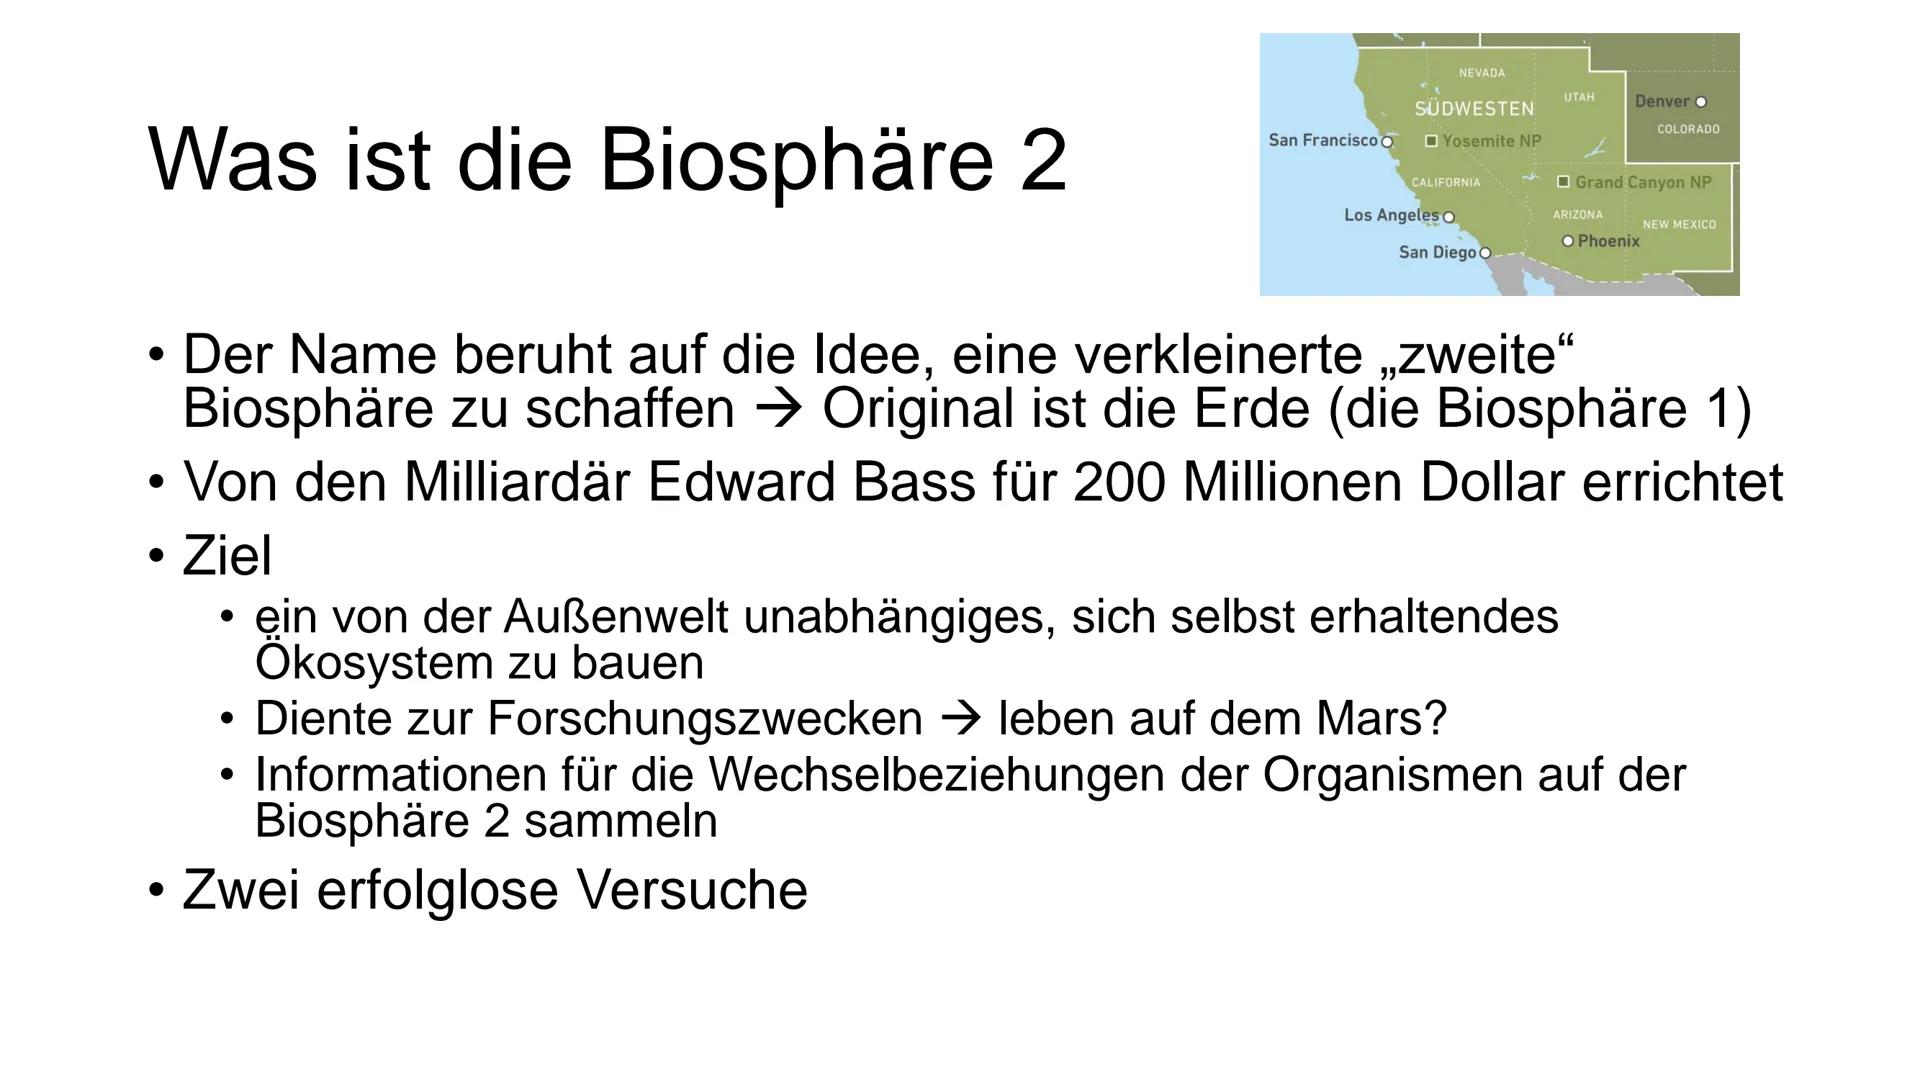 NAN
Kathrin Haug, Biologie
Biosphäre 2 Inhalt
• Was ist eine Biosphäre
• Was ist die Biosphäre 2
Aufbau
• Energiezentrum
Wasserkreislaufsyst